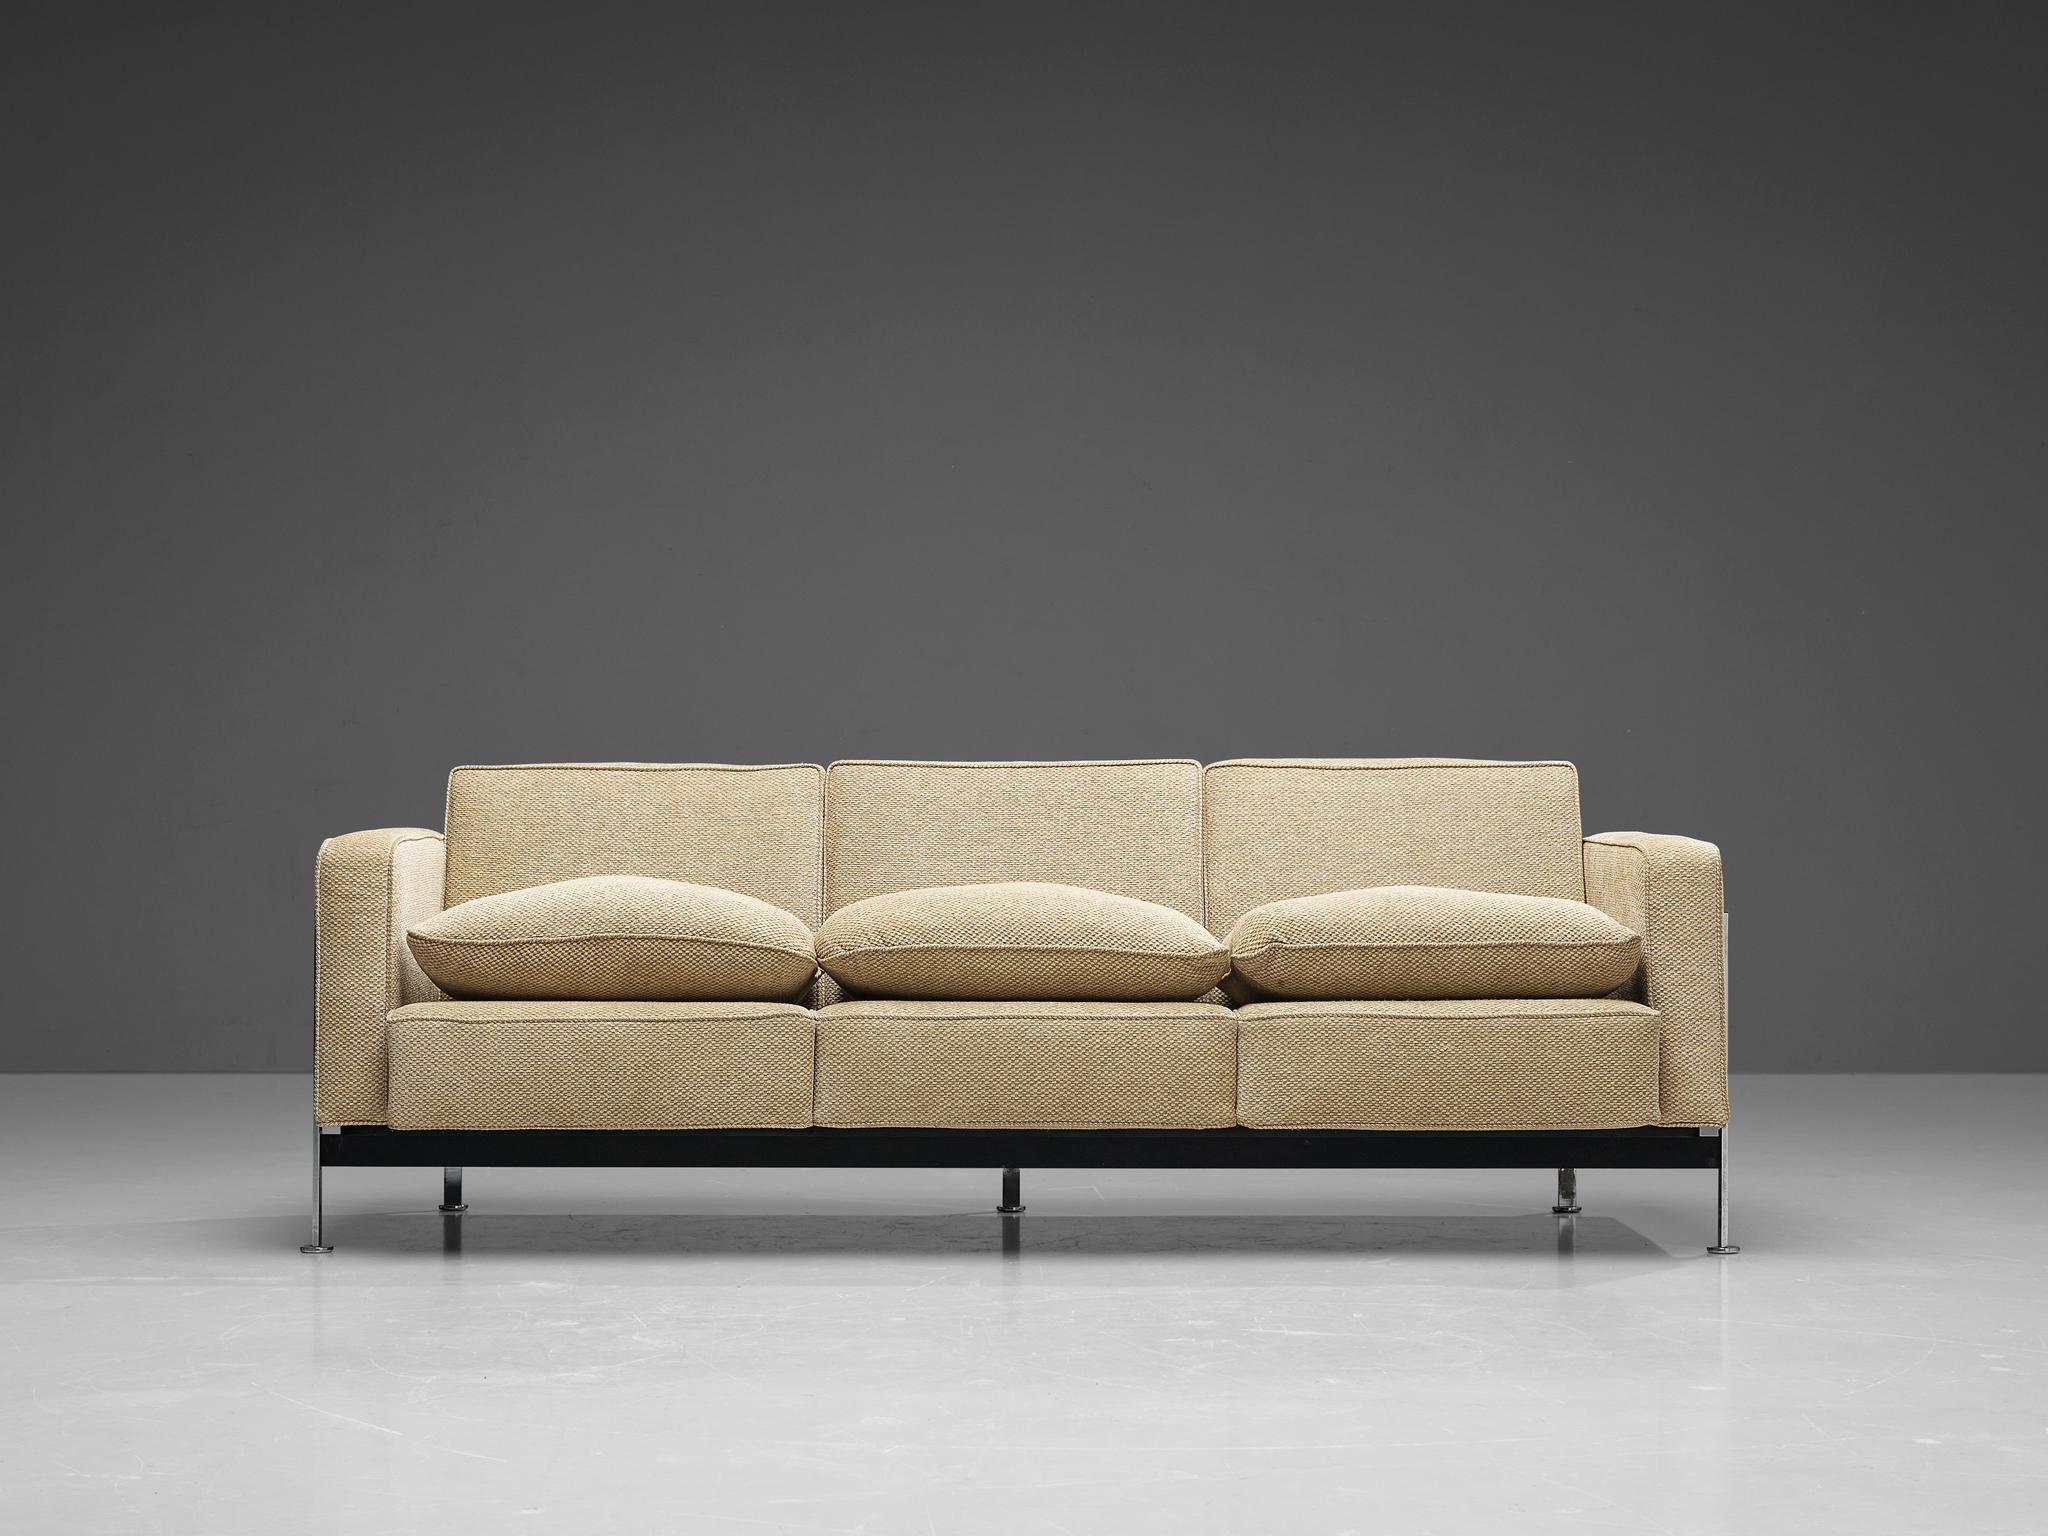 Robert Haussman für De Sede, dreisitziges Sofa, Stoff und verchromtes Metall, Schweiz, 1954. 

Dieses bequeme Dreisitzer-Sofa wurde von Robert Haussmann für De Sede entworfen und verfügt über einen verchromten Rahmen, der als Korb für die Kissen